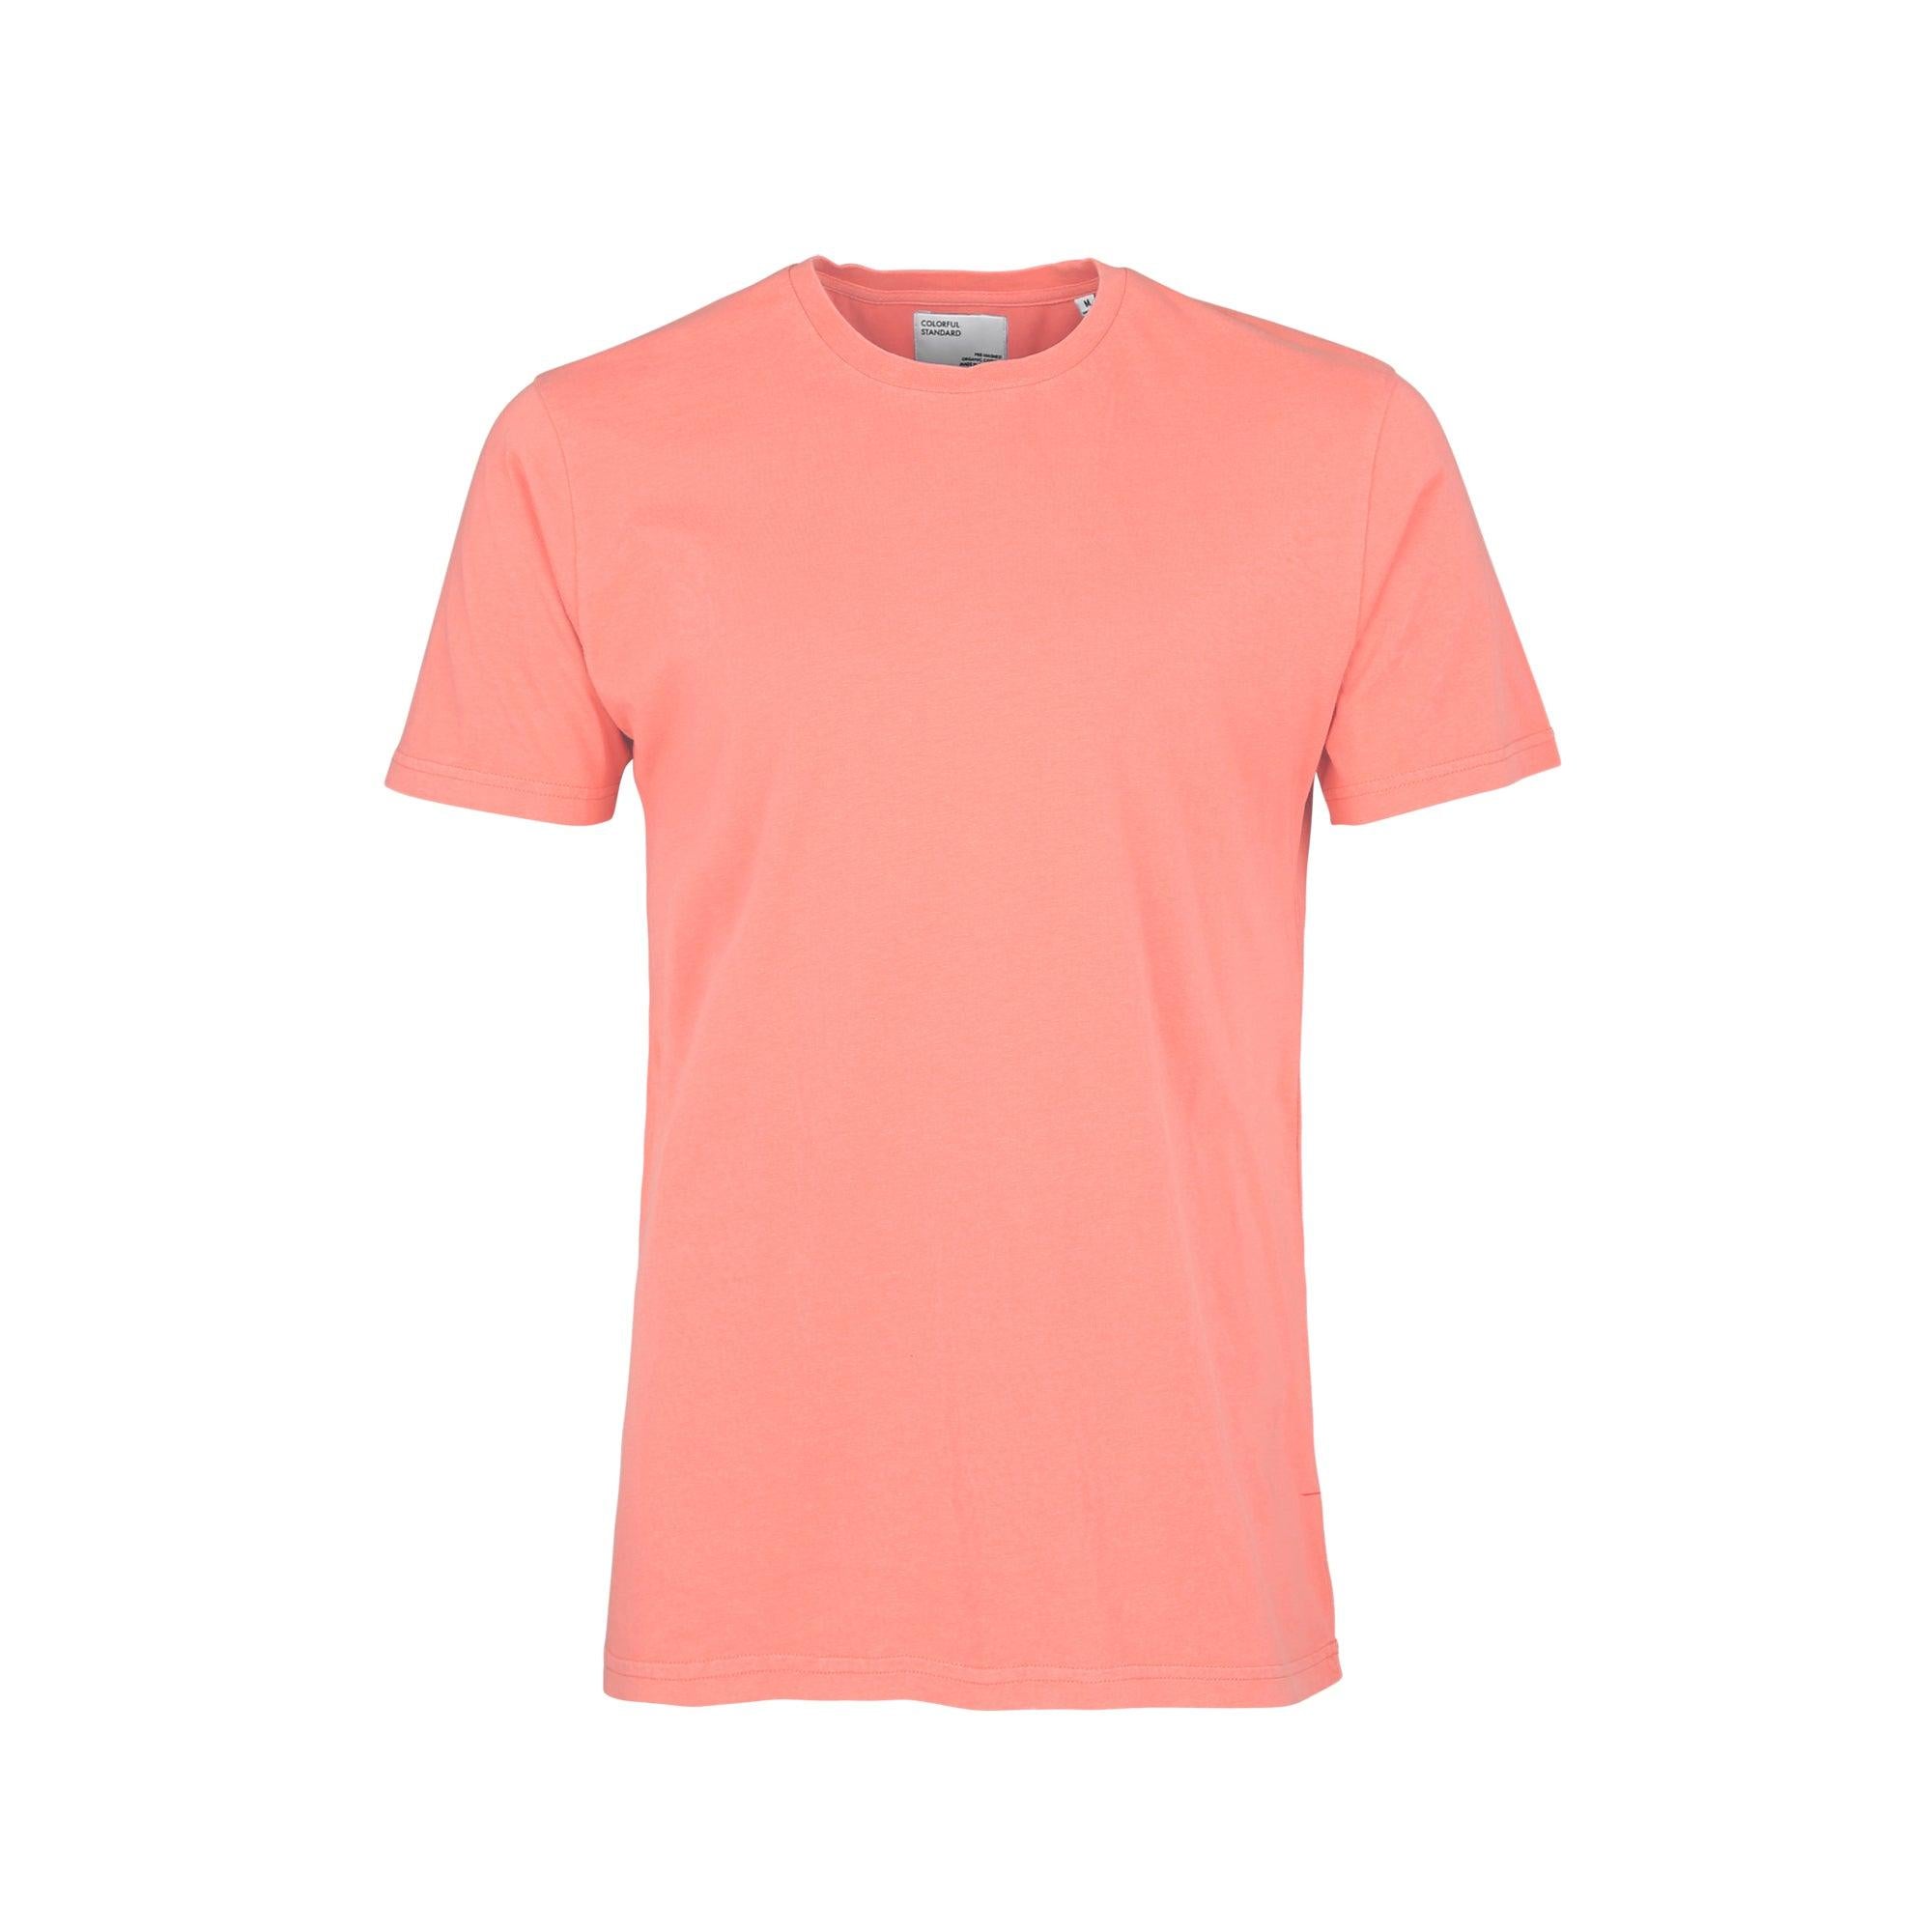 Camiseta Colorful Standard de Algodón Orgánico Bright Coral - ECRU